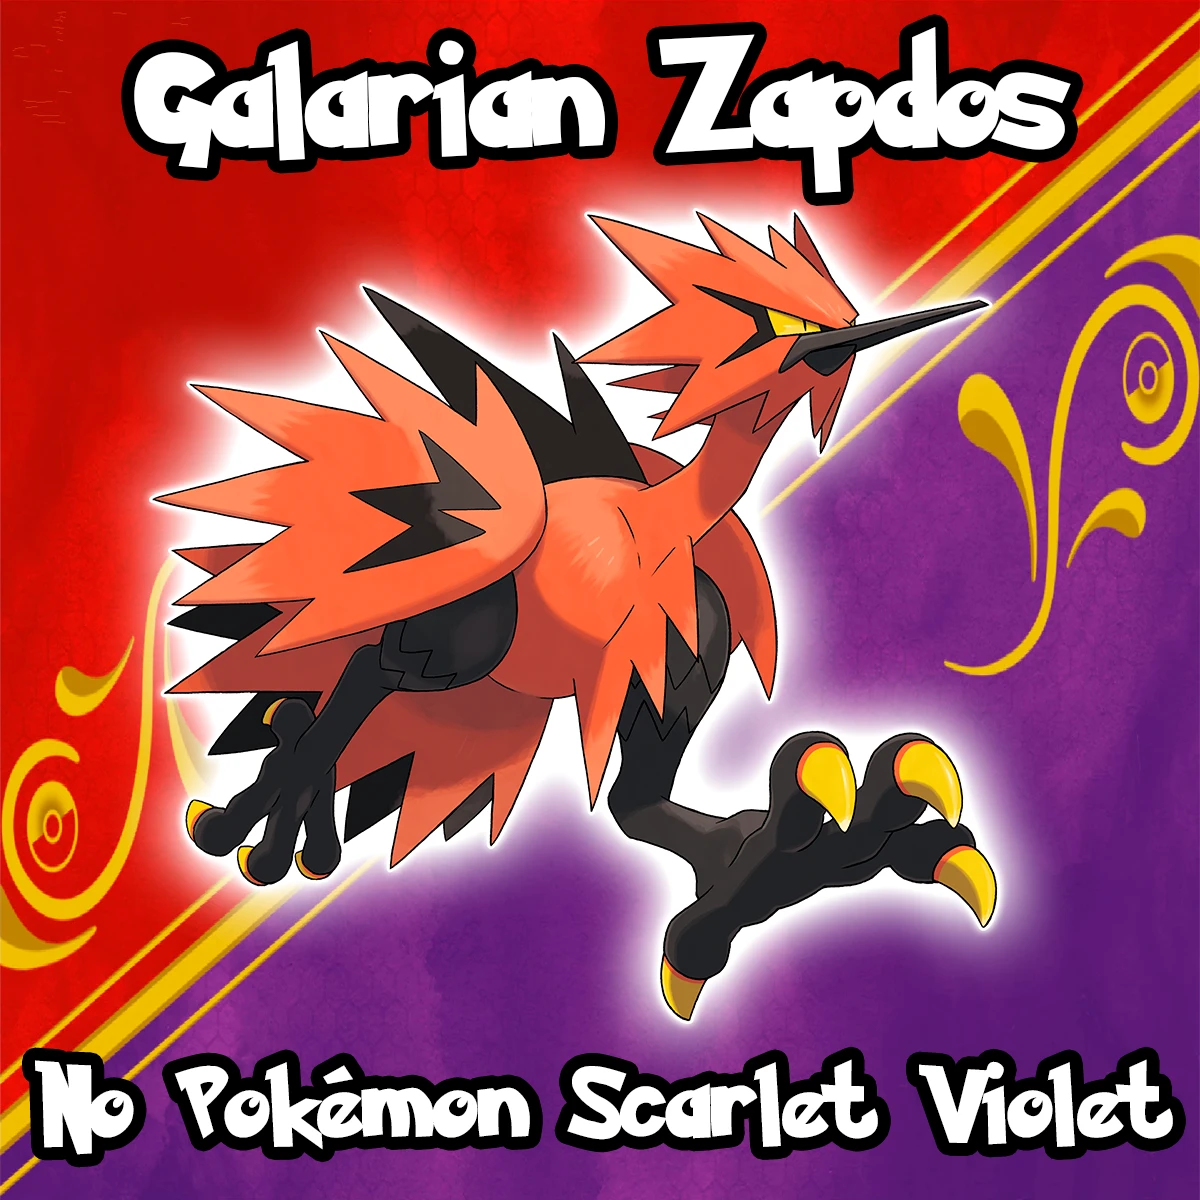 Pokémon Scarlet and Purple: todos os personagens confirmados até